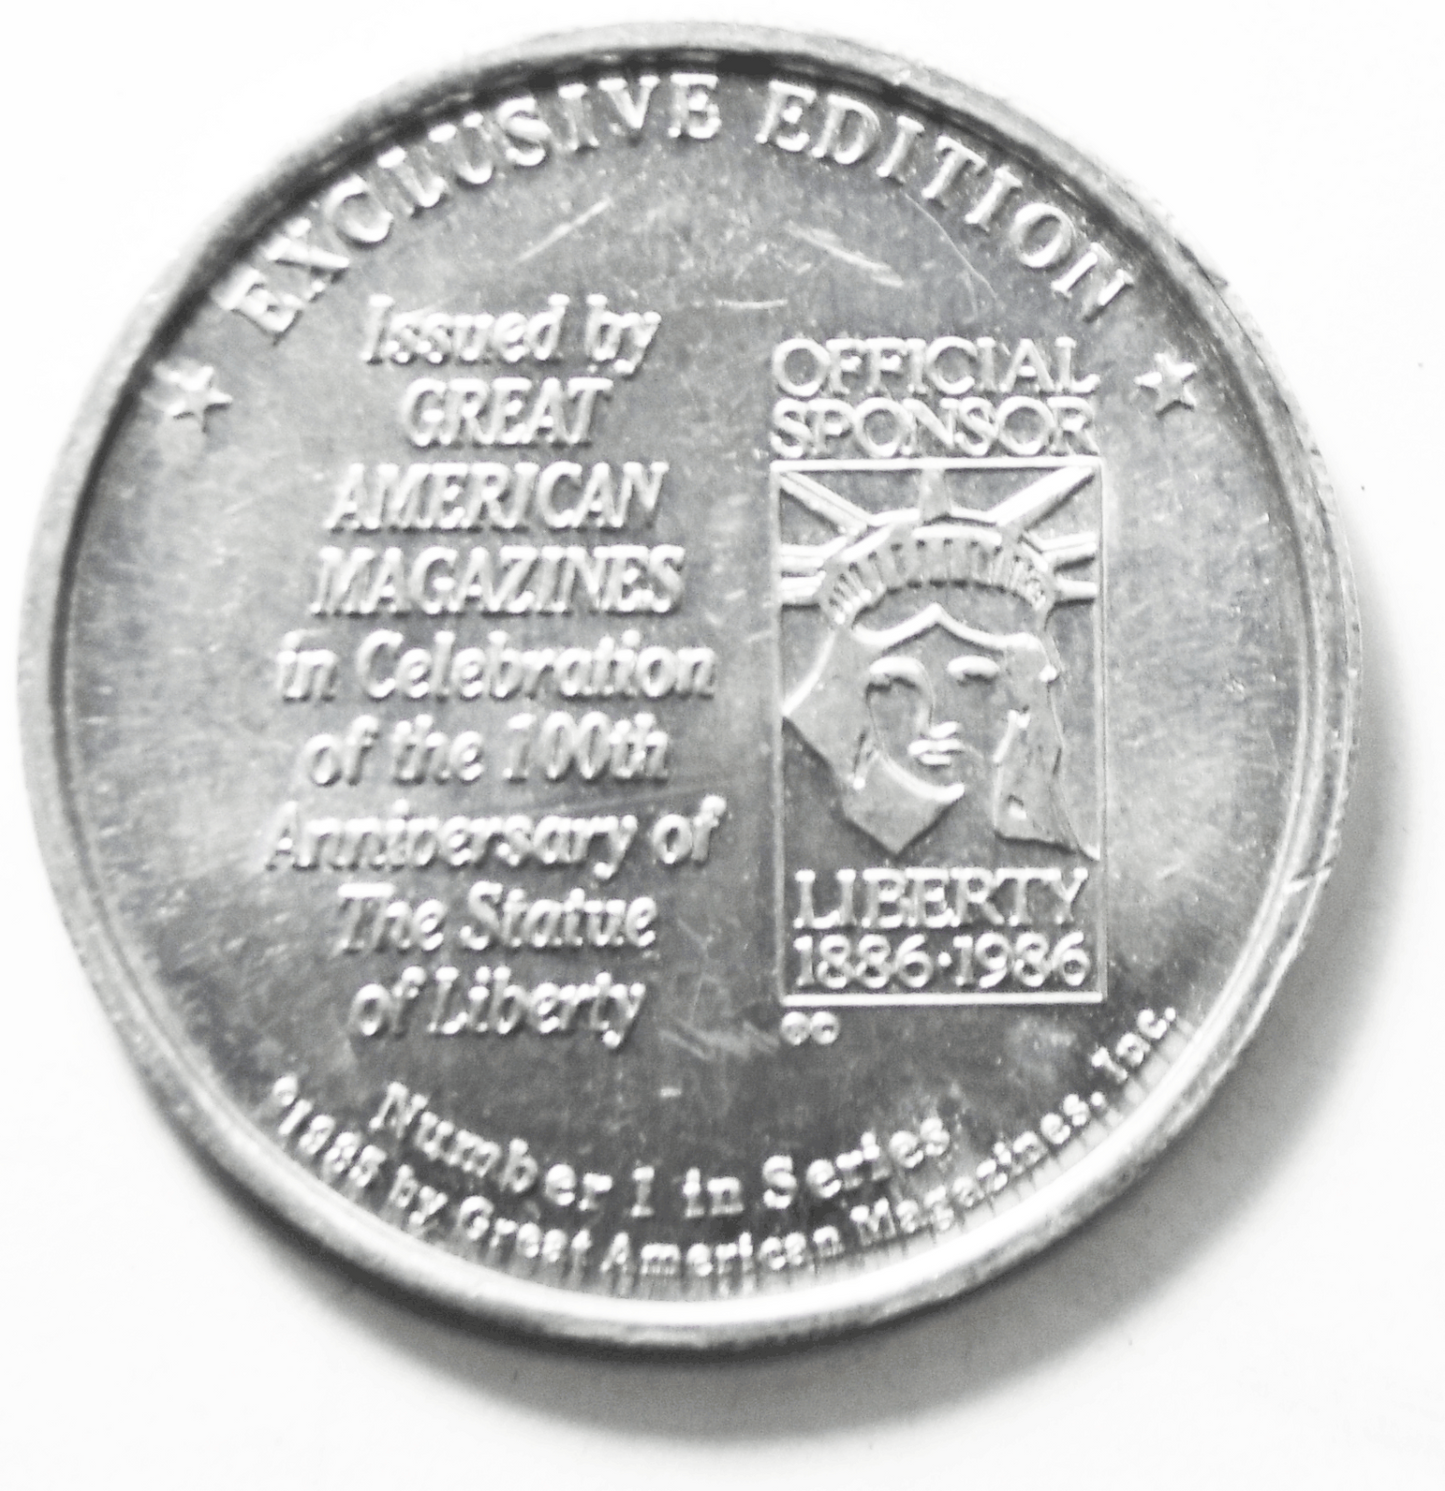 1986 Great American Magazine Liberty Centennial Aluminum Token Medal 39mm